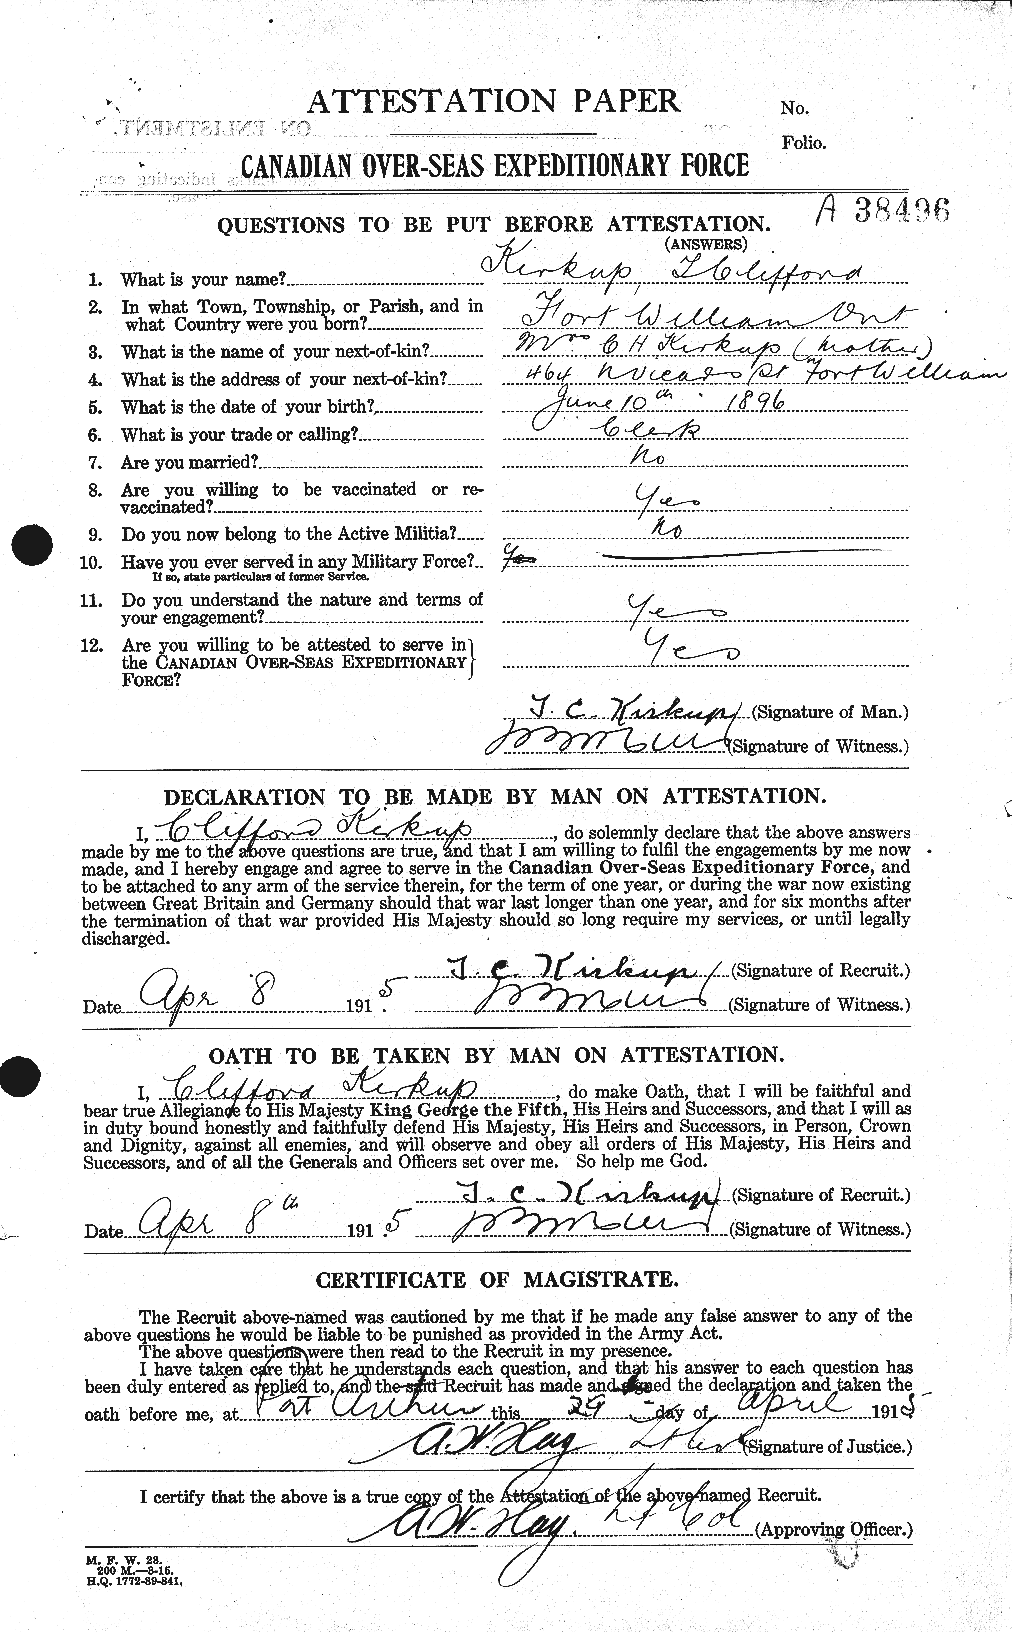 Dossiers du Personnel de la Première Guerre mondiale - CEC 436156a